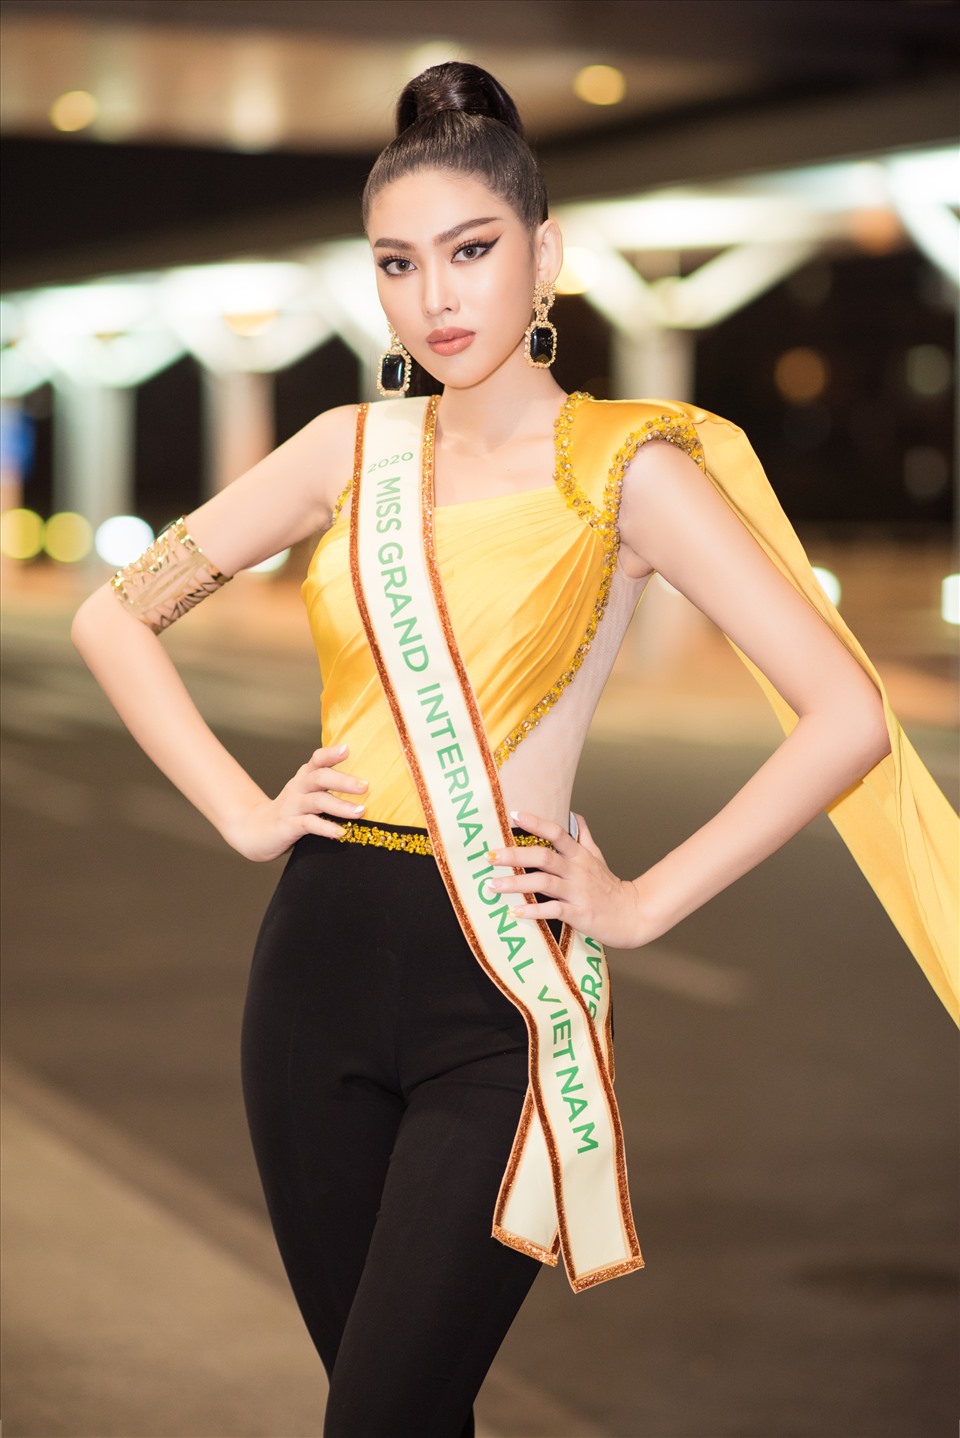 Sau khi được công bố trở thành đại diện tham dự cuộc thi Miss Grand International 2020, Á hậu Ngọc Thảo đã gấp rút tập luyện và chuẩn bị hành trang cho ngày lên đường. Ảnh: SV.